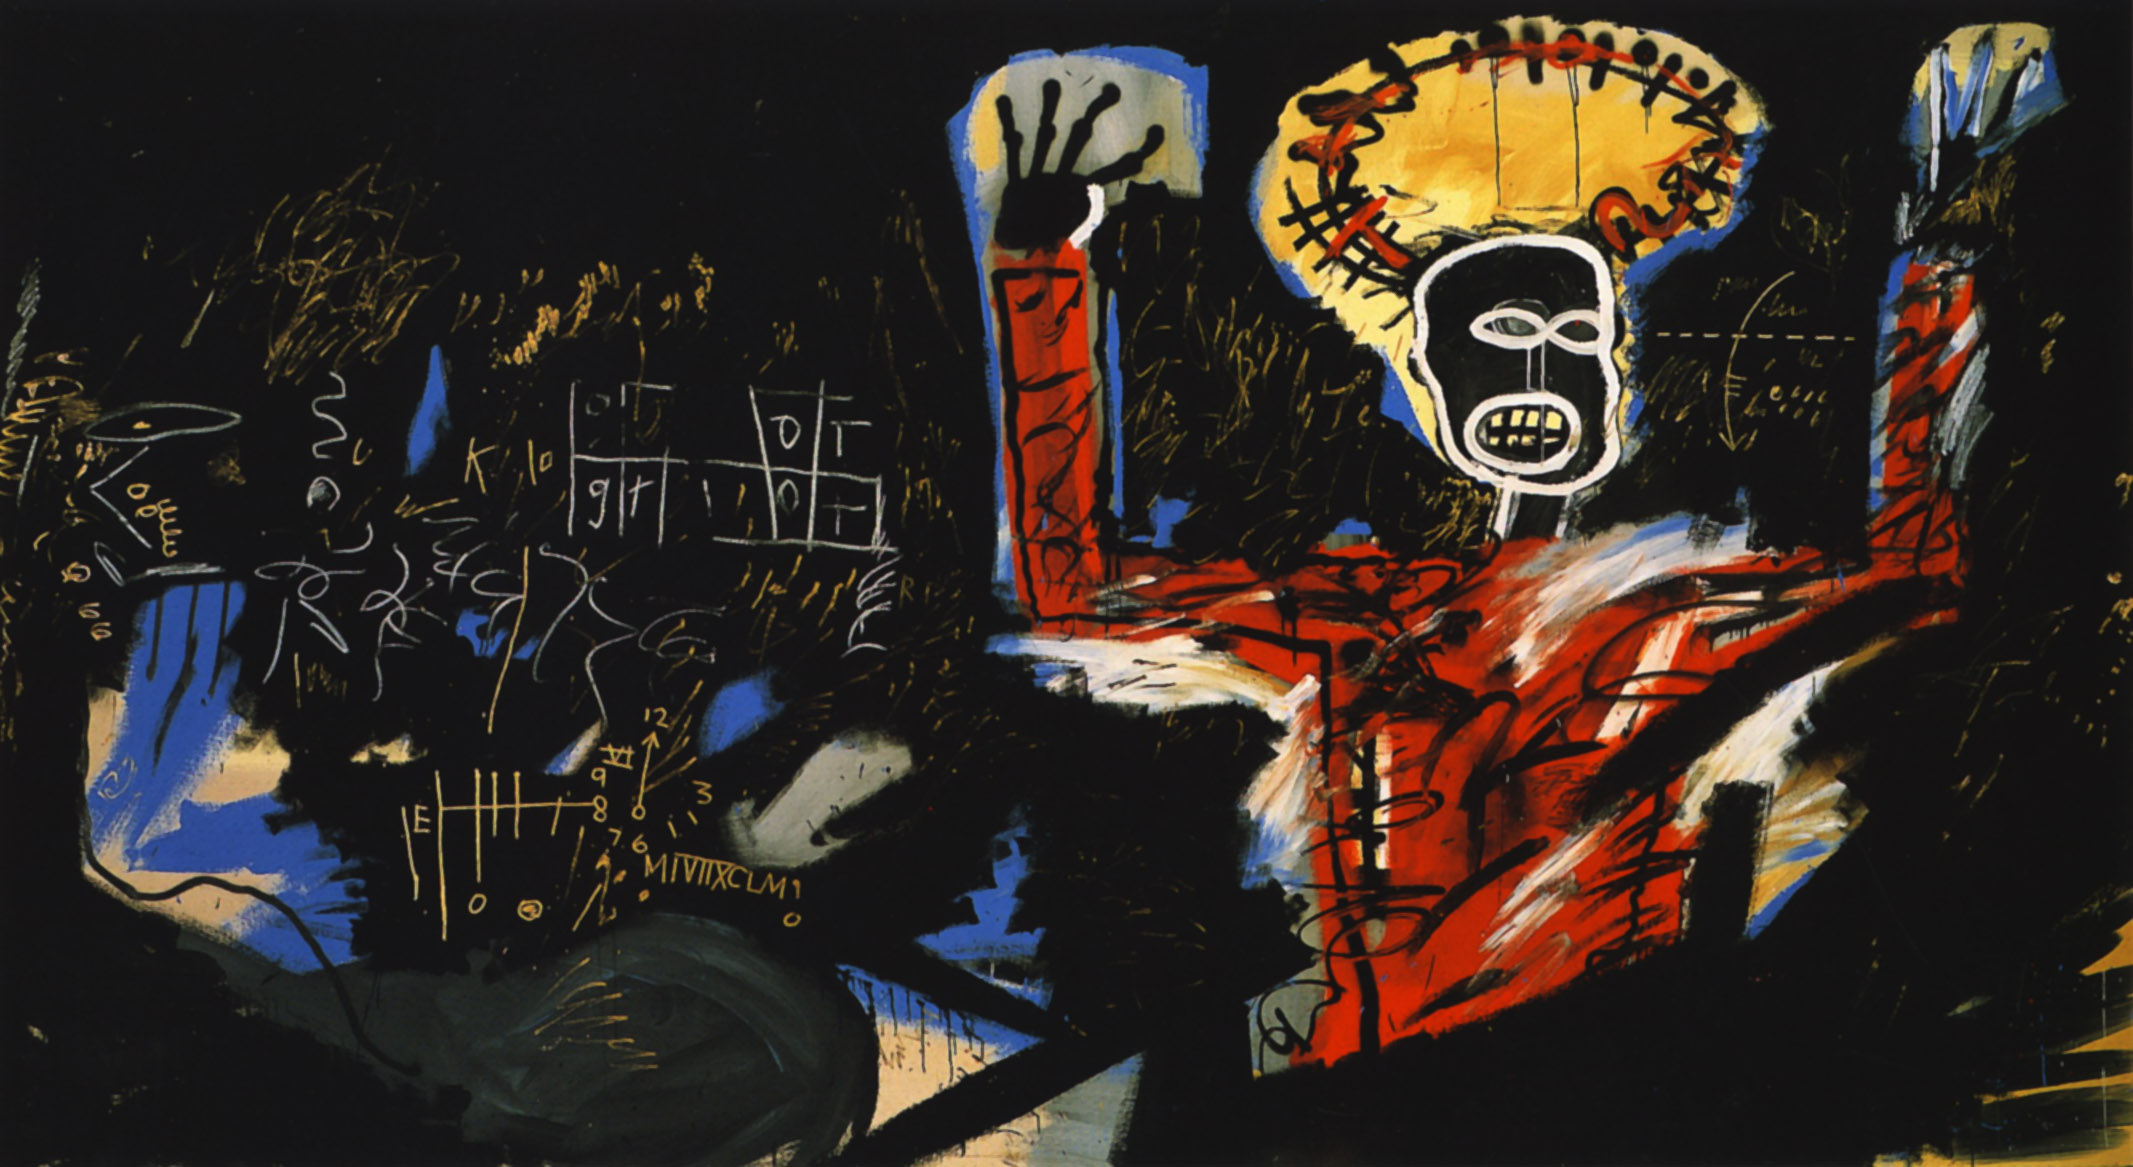 Profitto I by Jean-Michel Basquiat - 1982 - 220 cm × 400 cm collezione privata